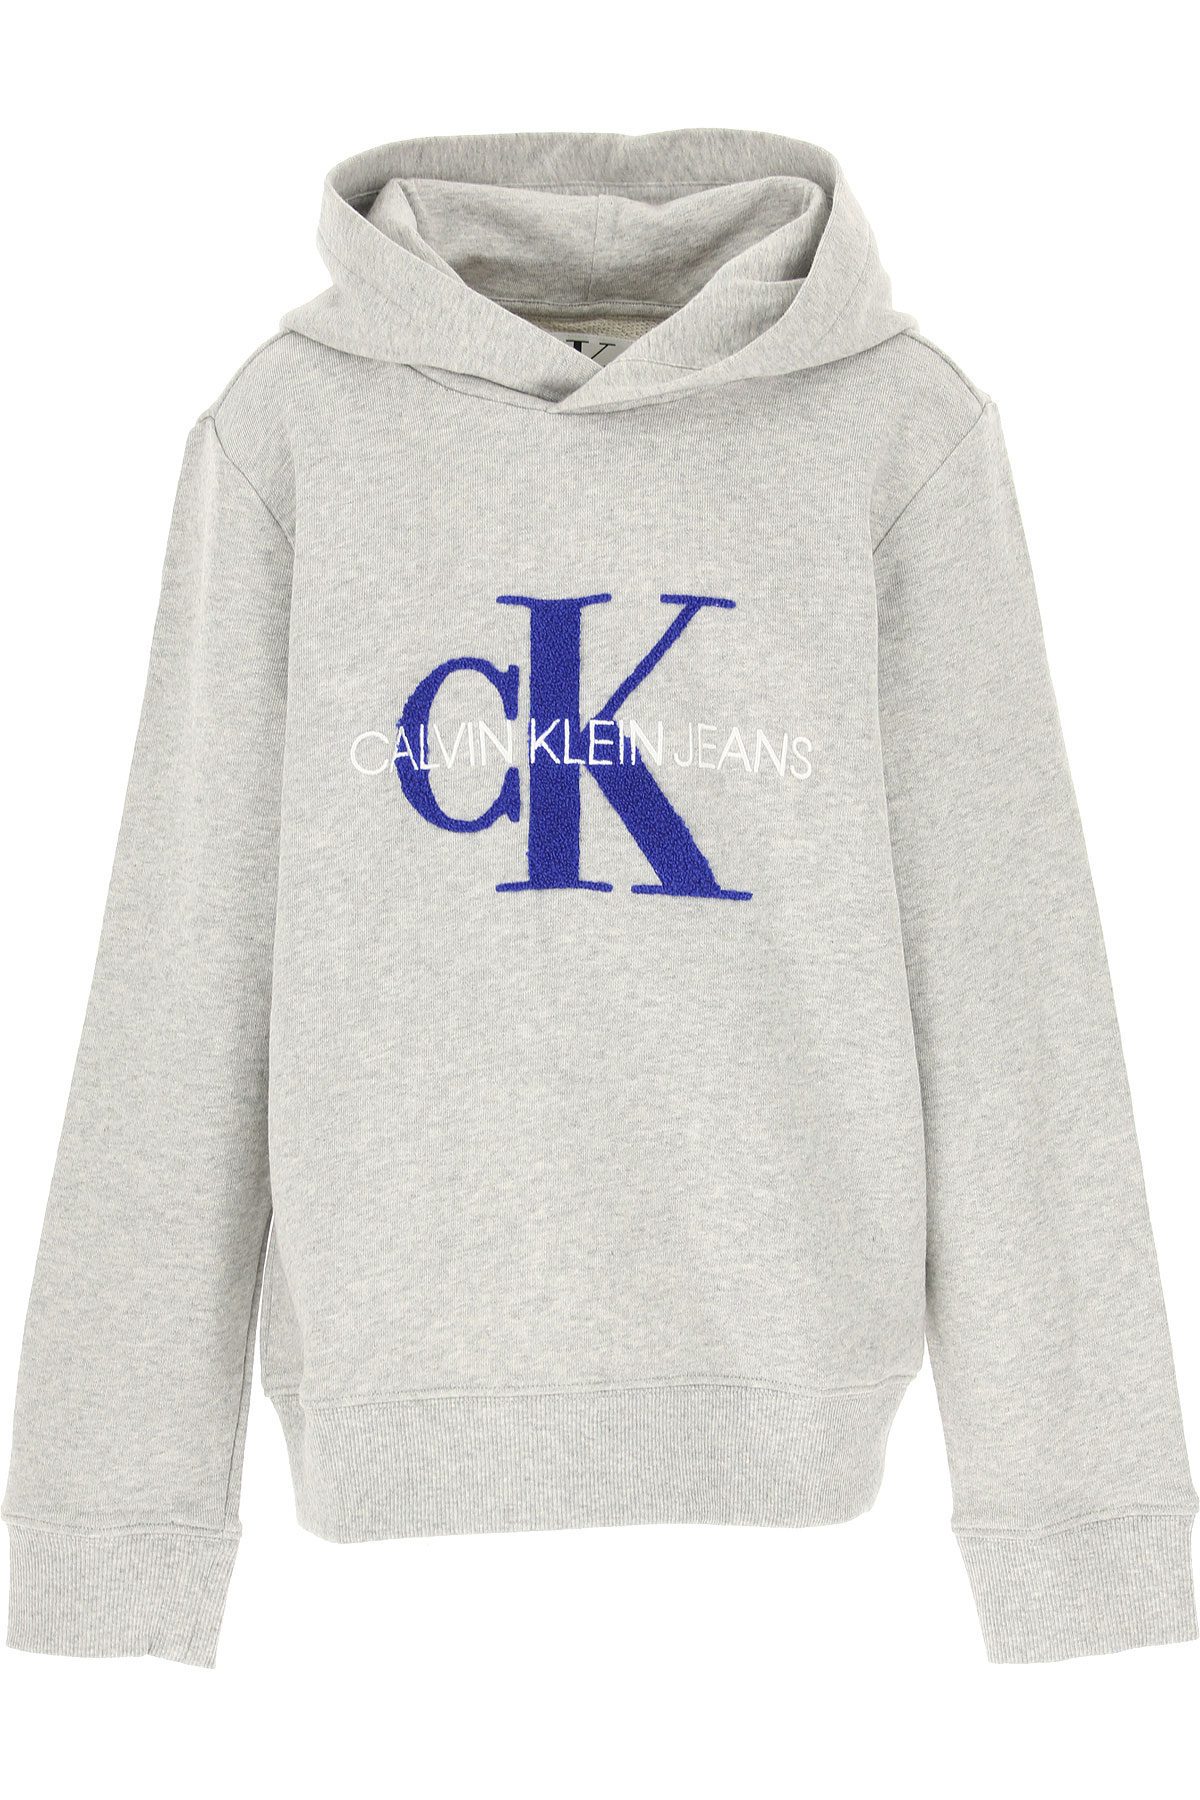 Calvin Klein Kinder Sweatshirt & Kapuzenpullover für Jungen Günstig im Sale, Grau, Baumwolle, 2017, 12Y 14Y 16Y 8Y